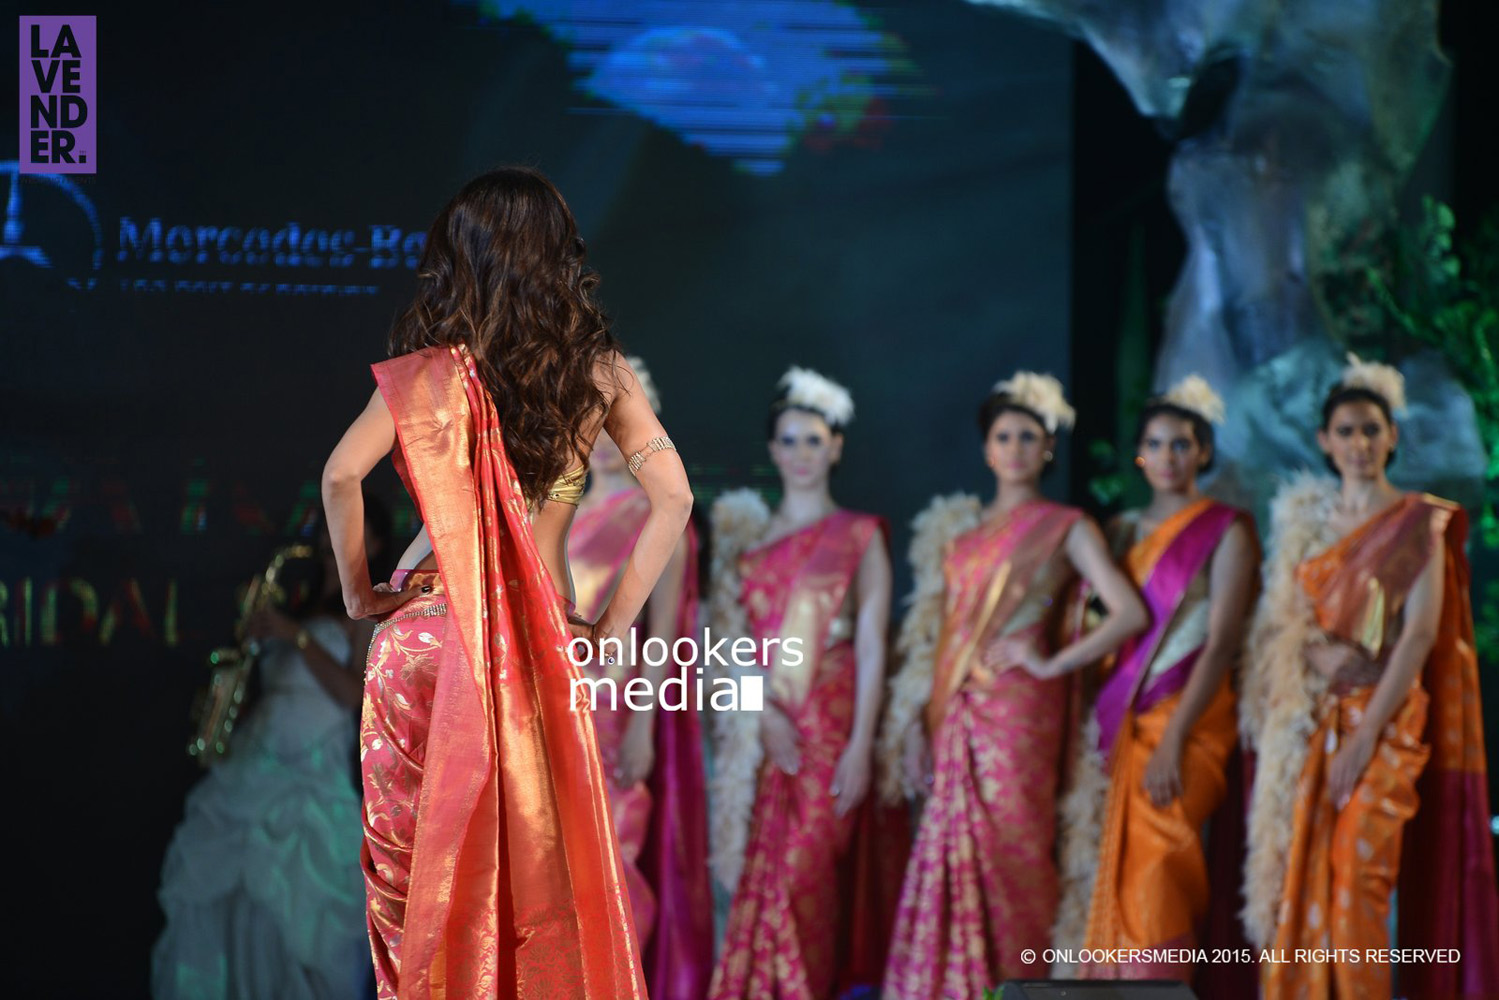 Shilpa Shetty at Beena Kannan Bridal Show 2015 Stills-Photos